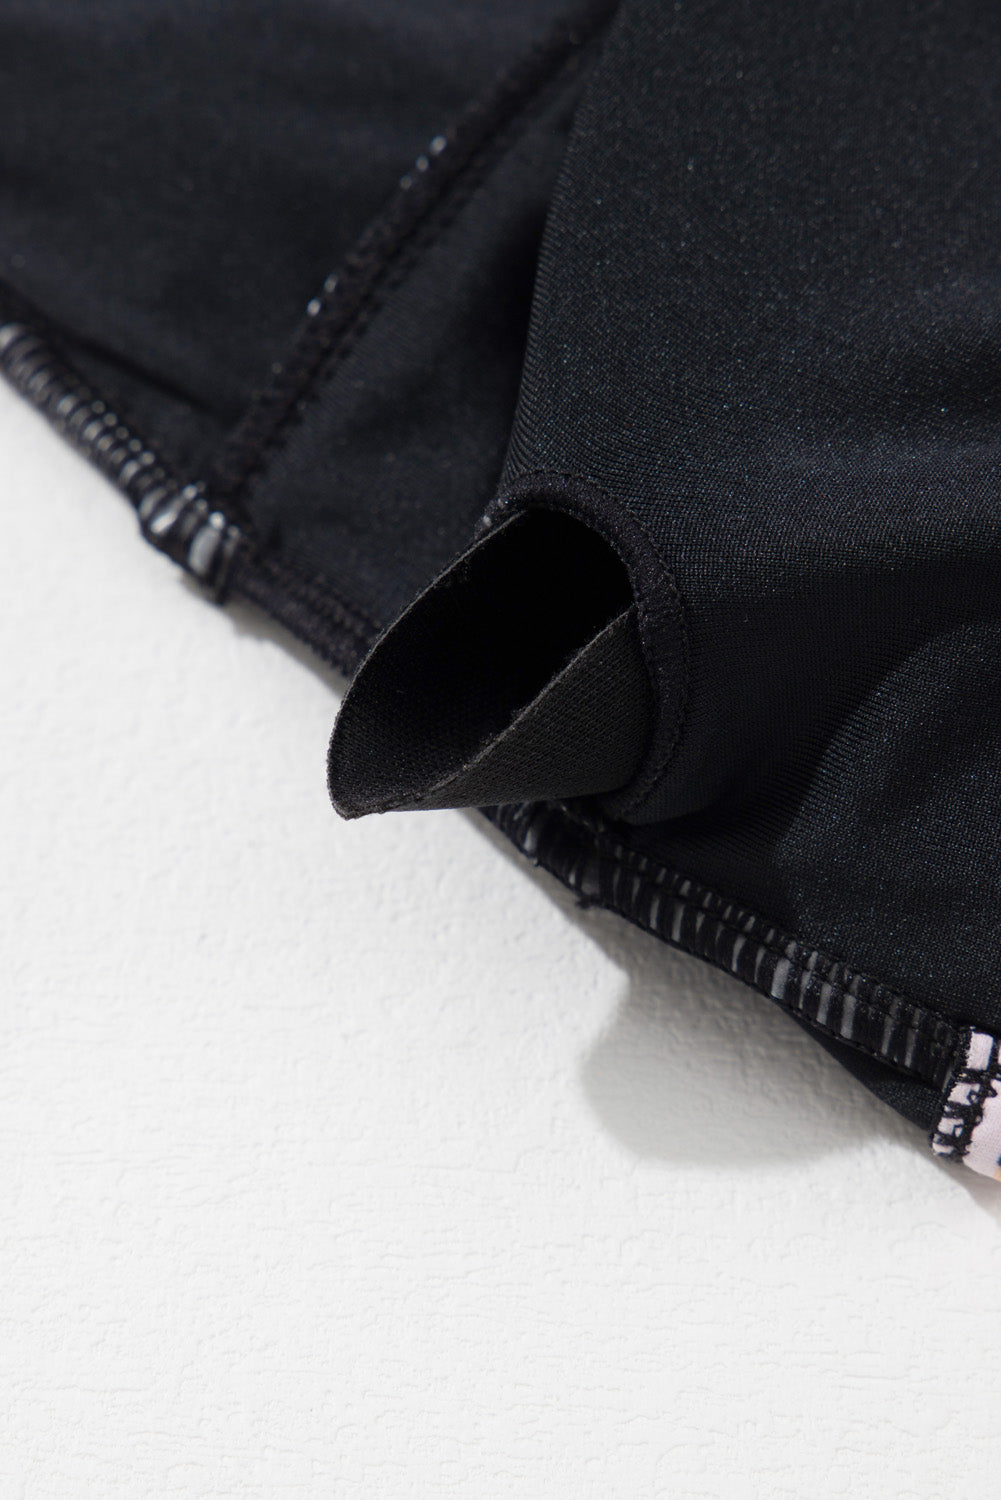 Schwarzer, gerüschter, einteiliger Badeanzug mit Animal-Print und Gürtel und V-Ausschnitt